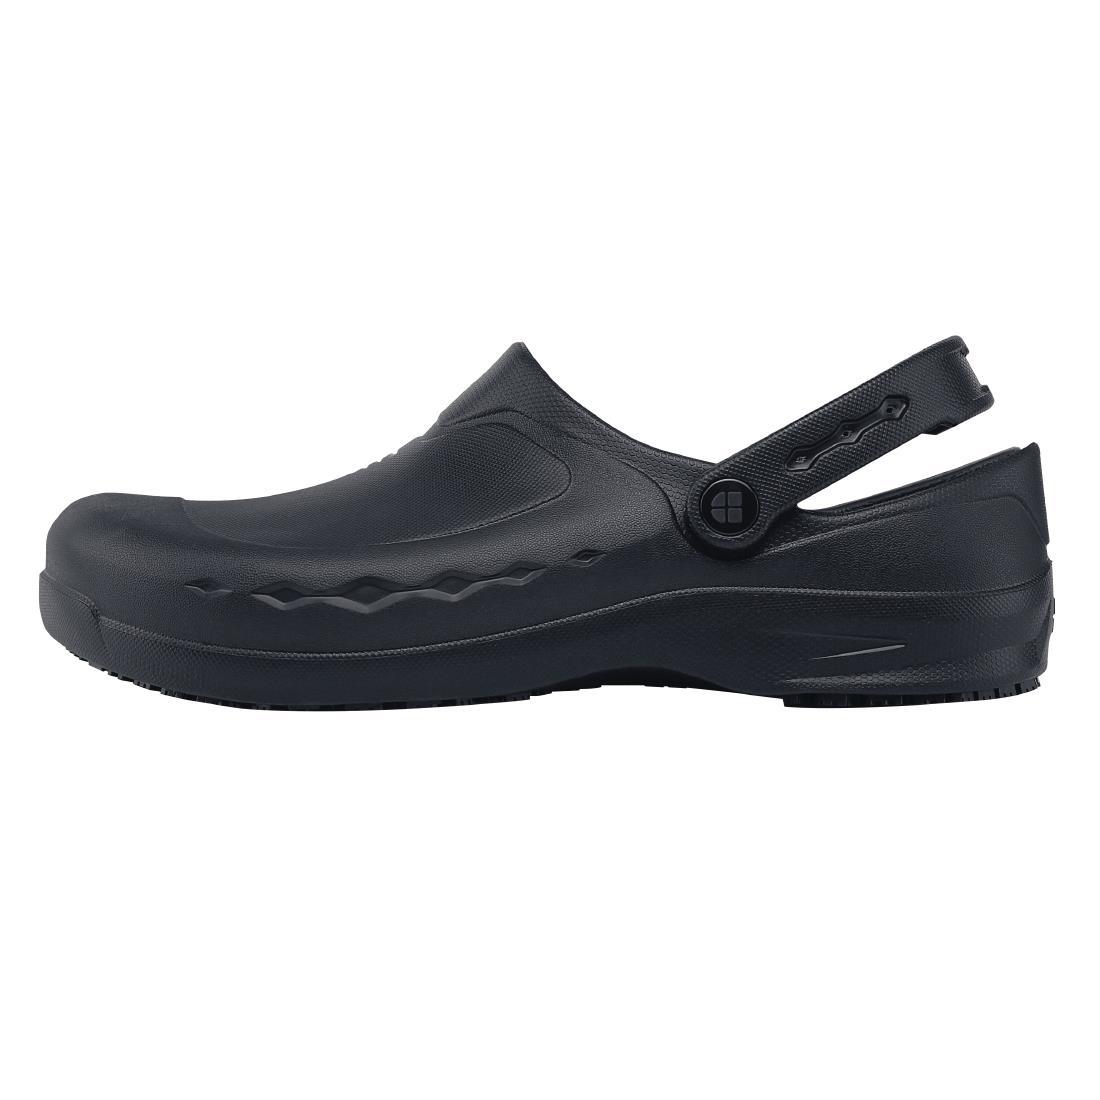 Shoes for Crews Zinc Clogs Black Size 45 - BB569-45  - 1